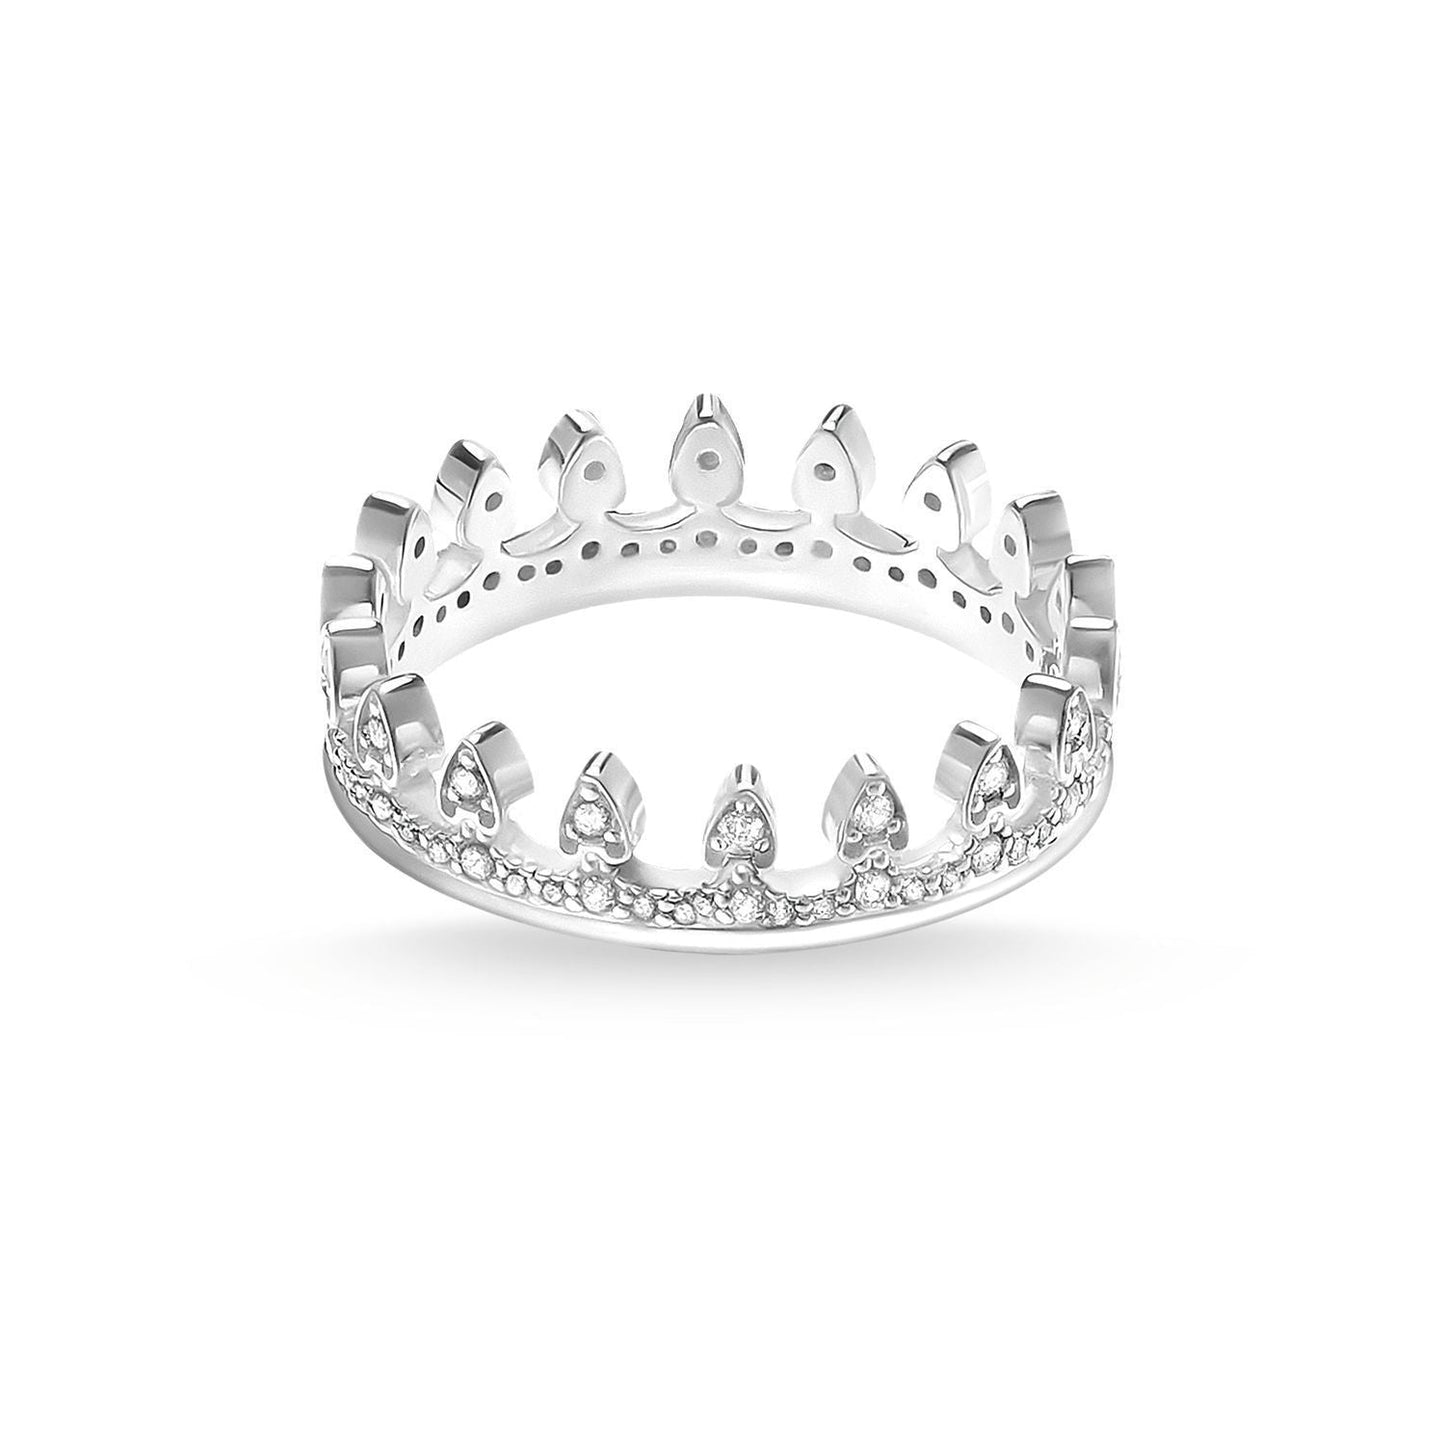 Thomas Sabo Ring "Crown"